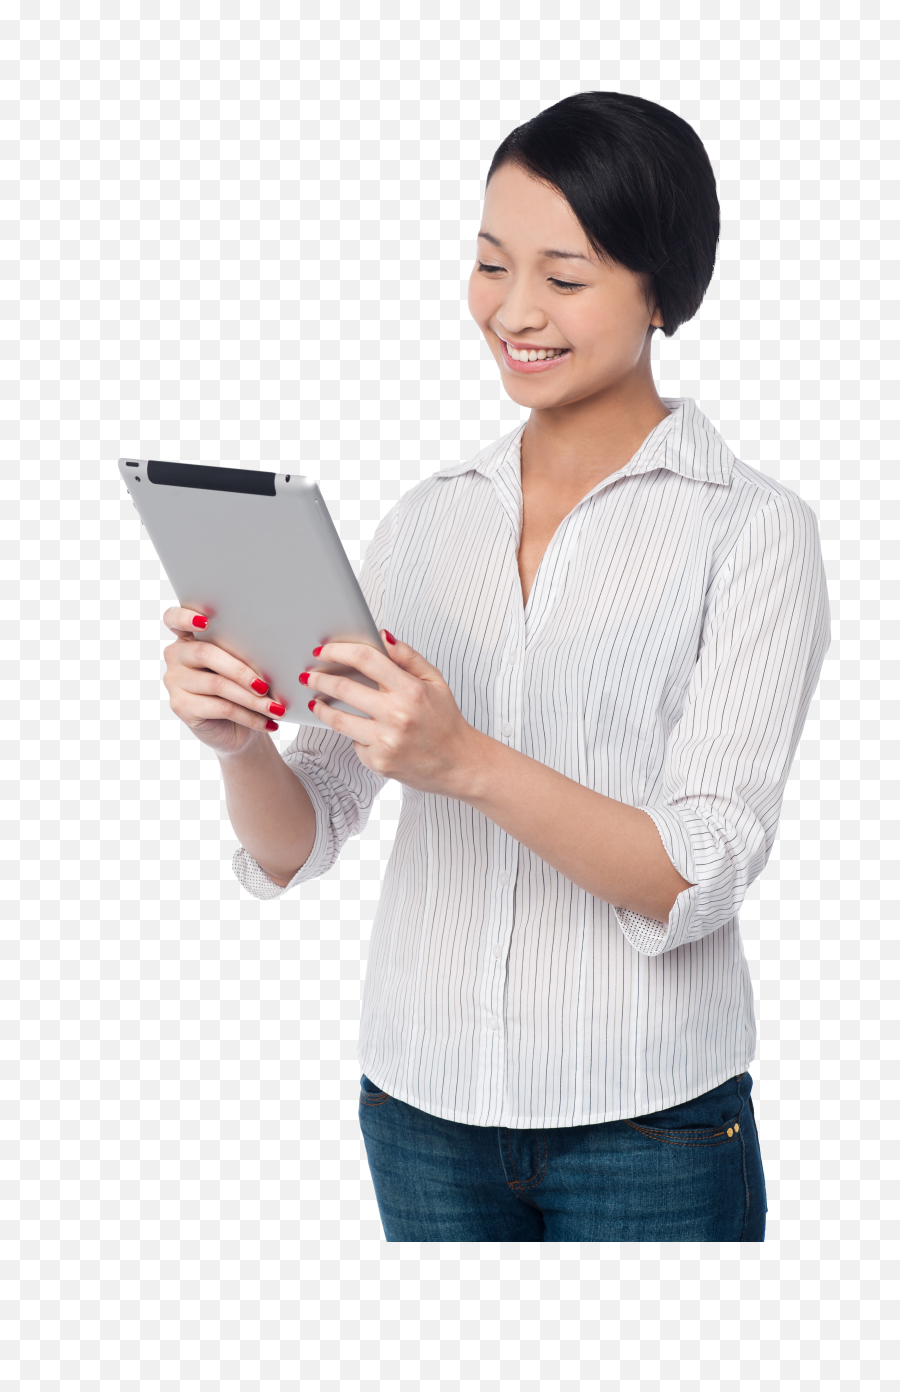 Woman Holding Ipad Png Image - Purepng Free Transparent,Ipad Png Transparent